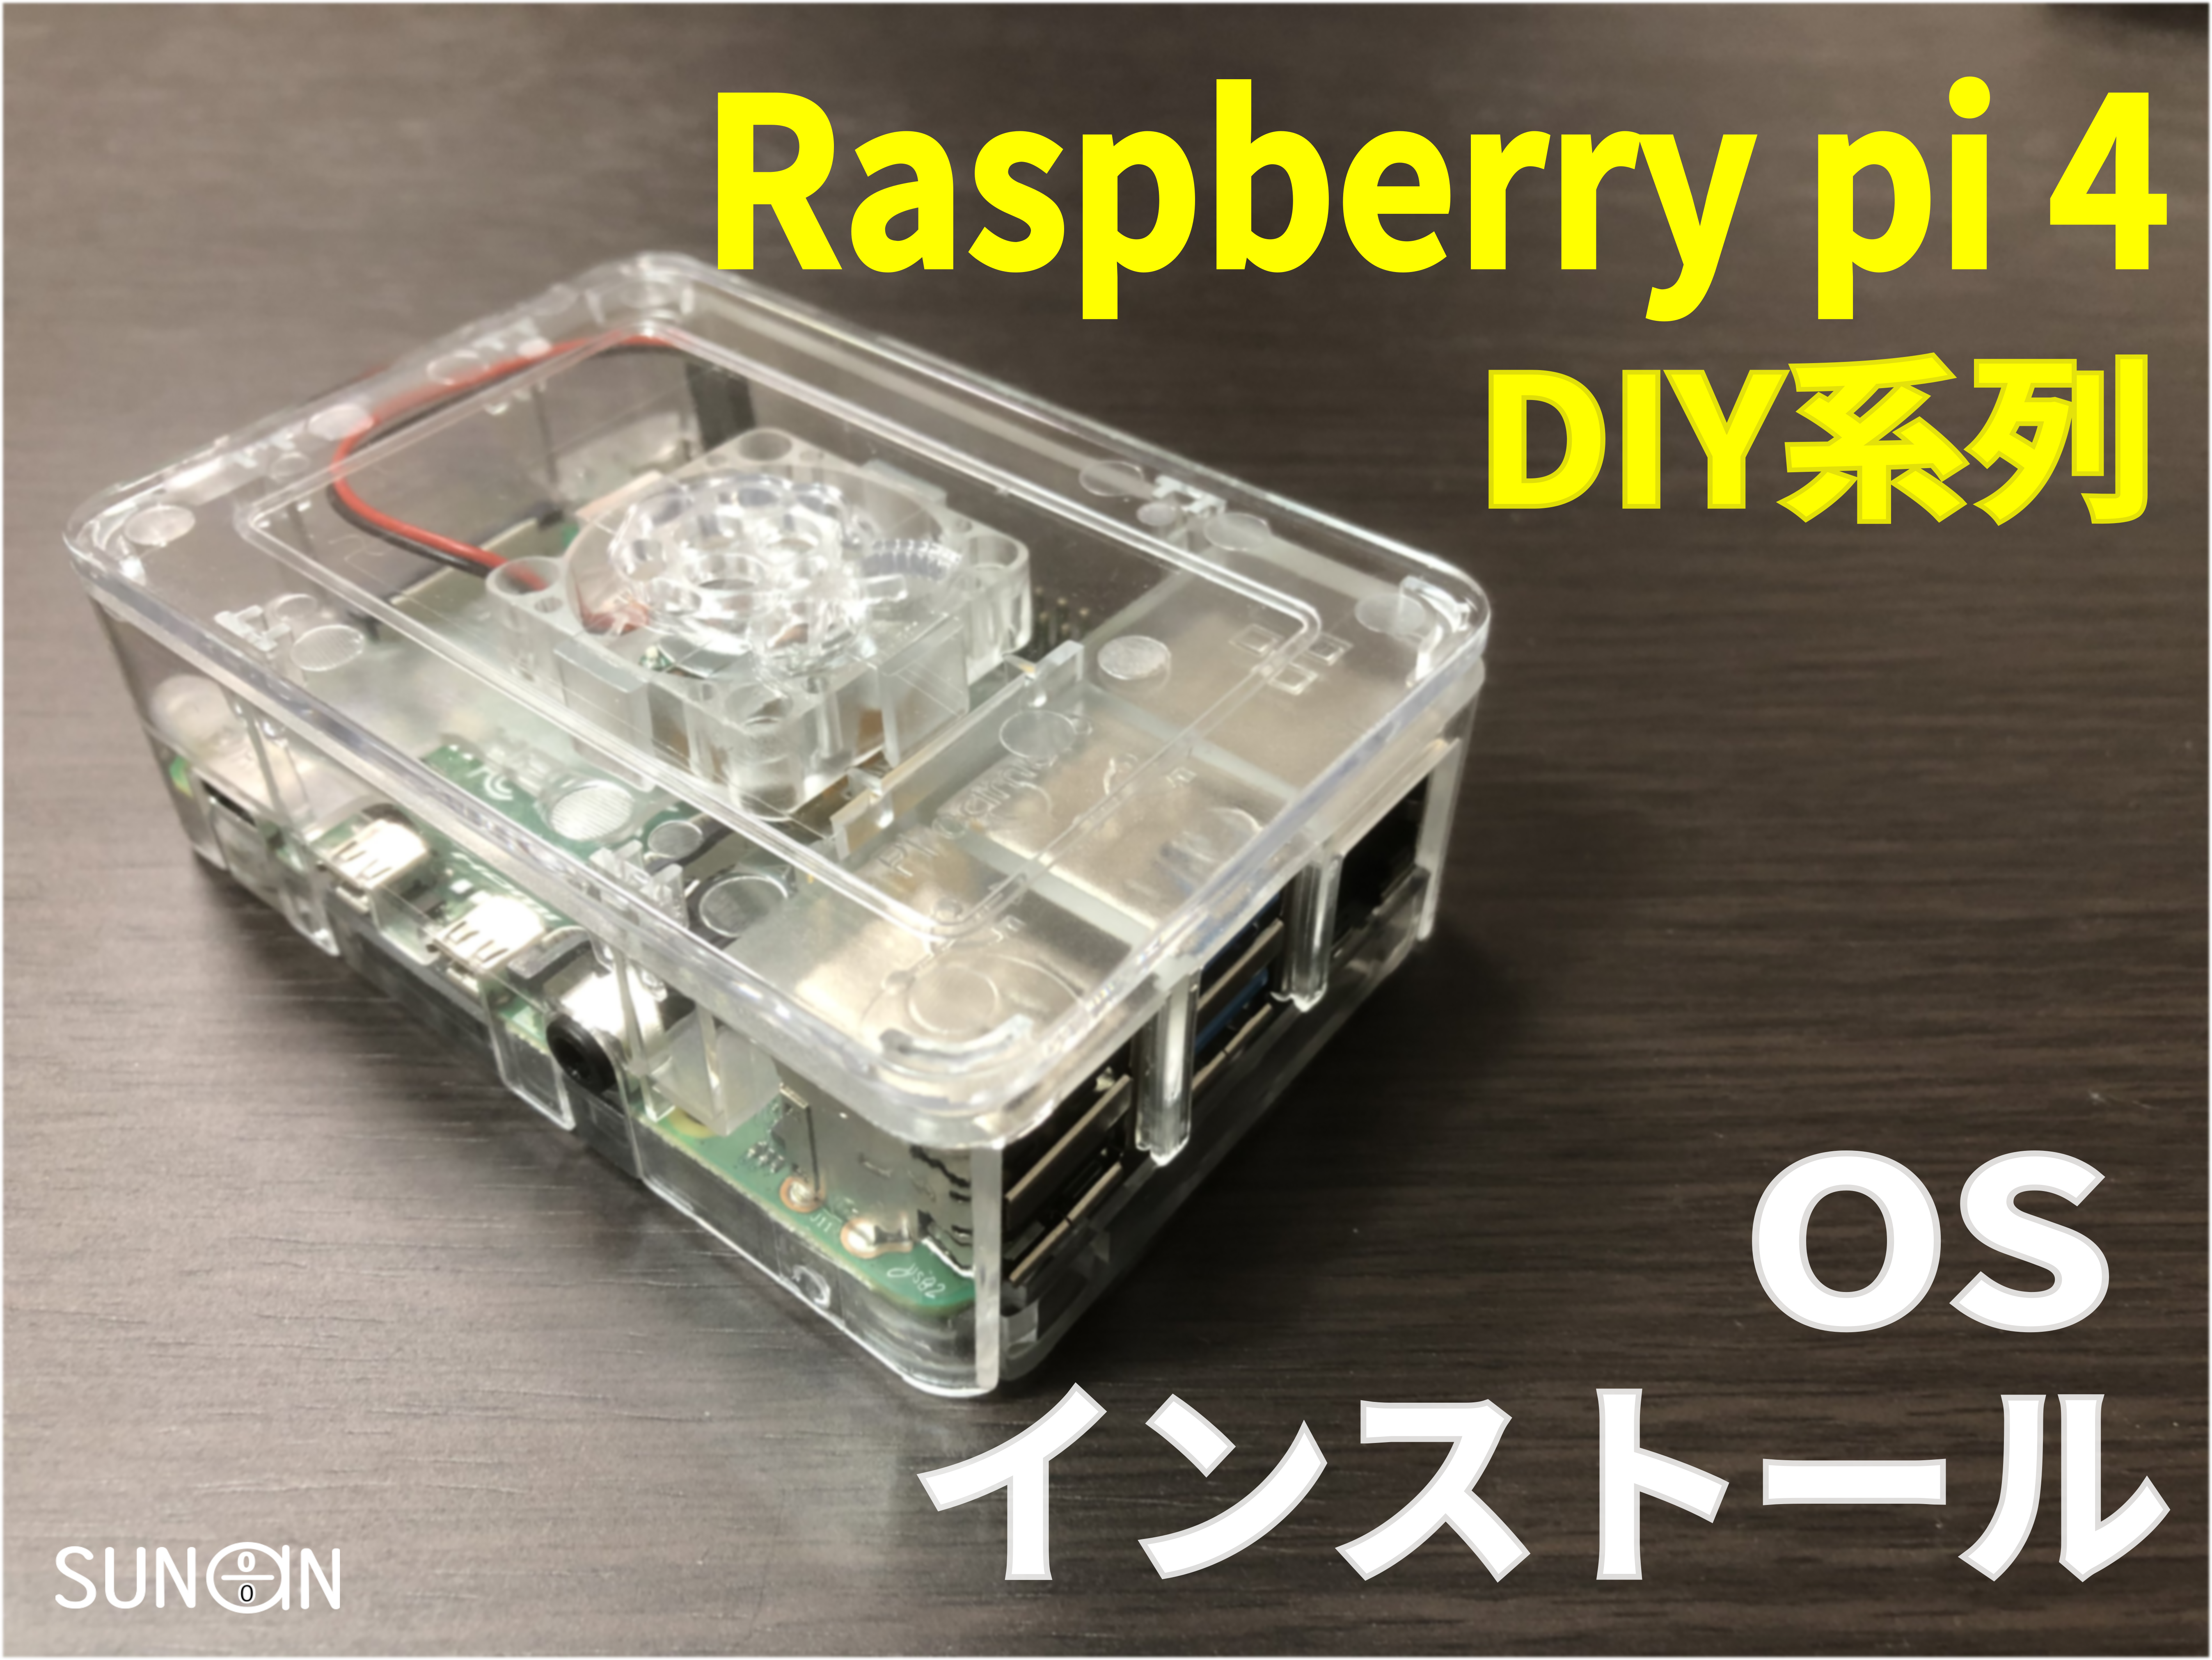 DIY_raspberry_os